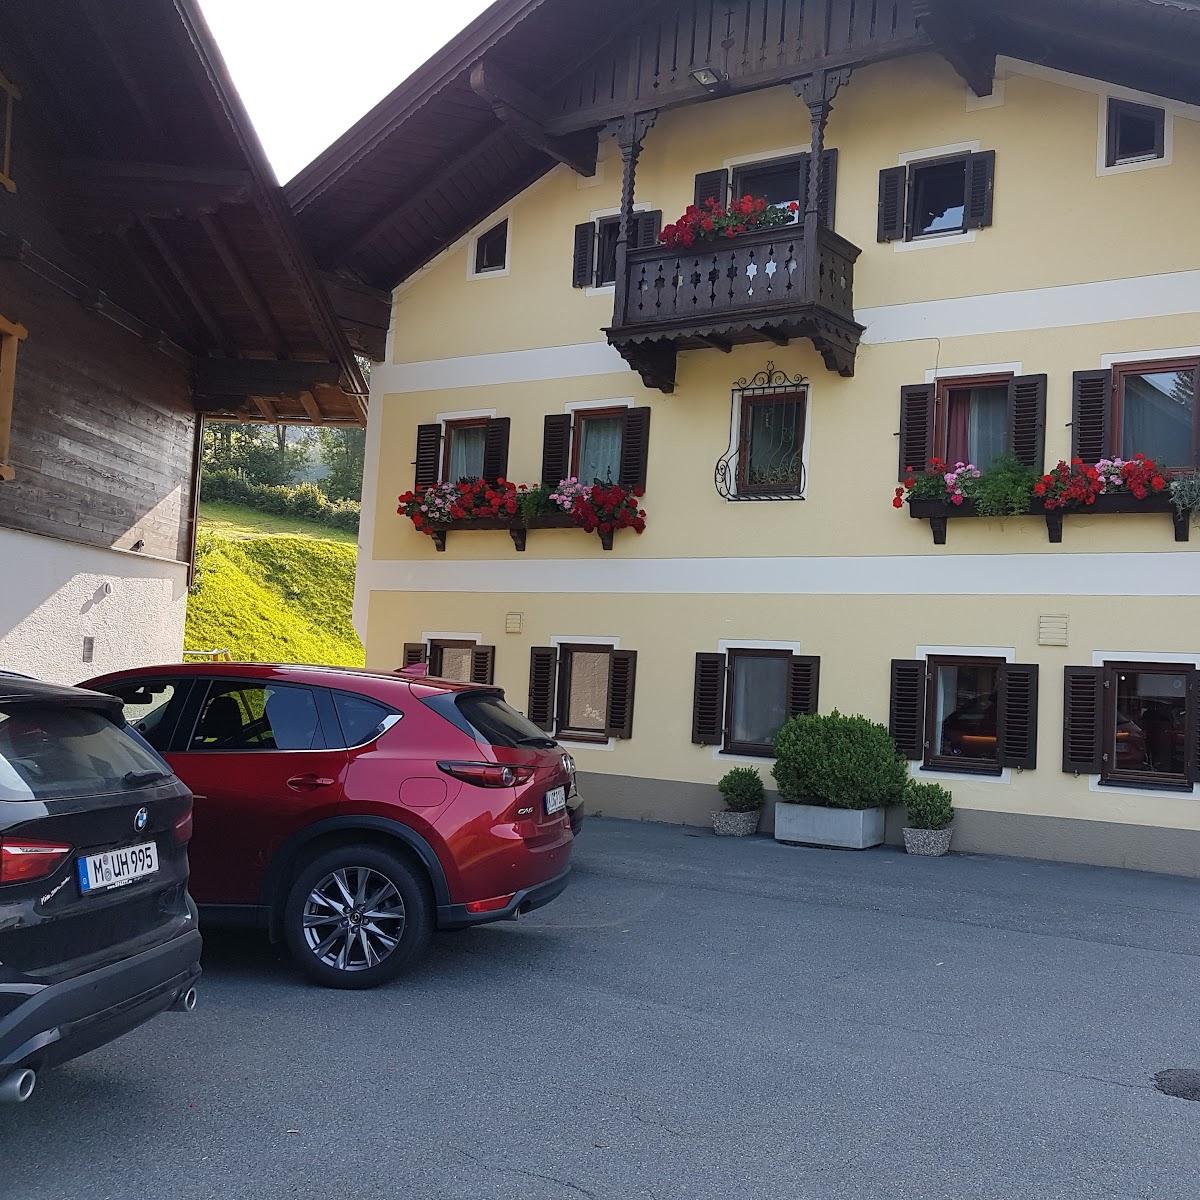 Restaurant "Gasthof Grieswirt - St. Johann in Tirol" in Sankt Johann in Tirol